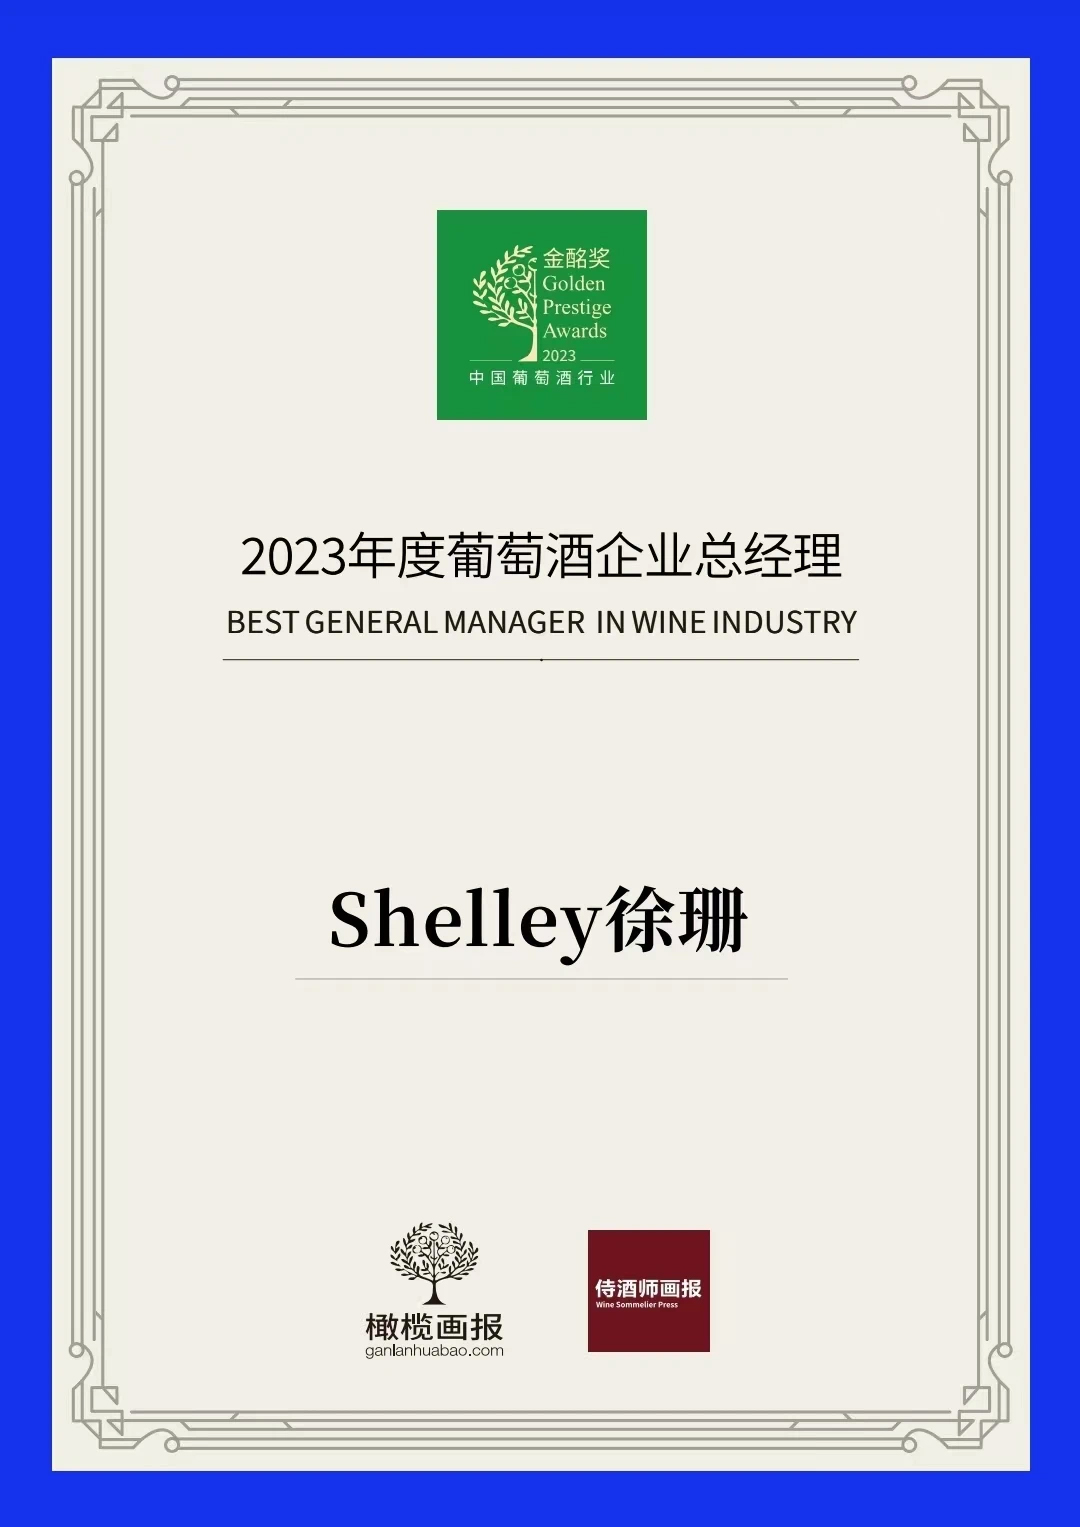 荣耀加冕|智利圣丽塔集团大中华区总经理Shelley徐珊荣获